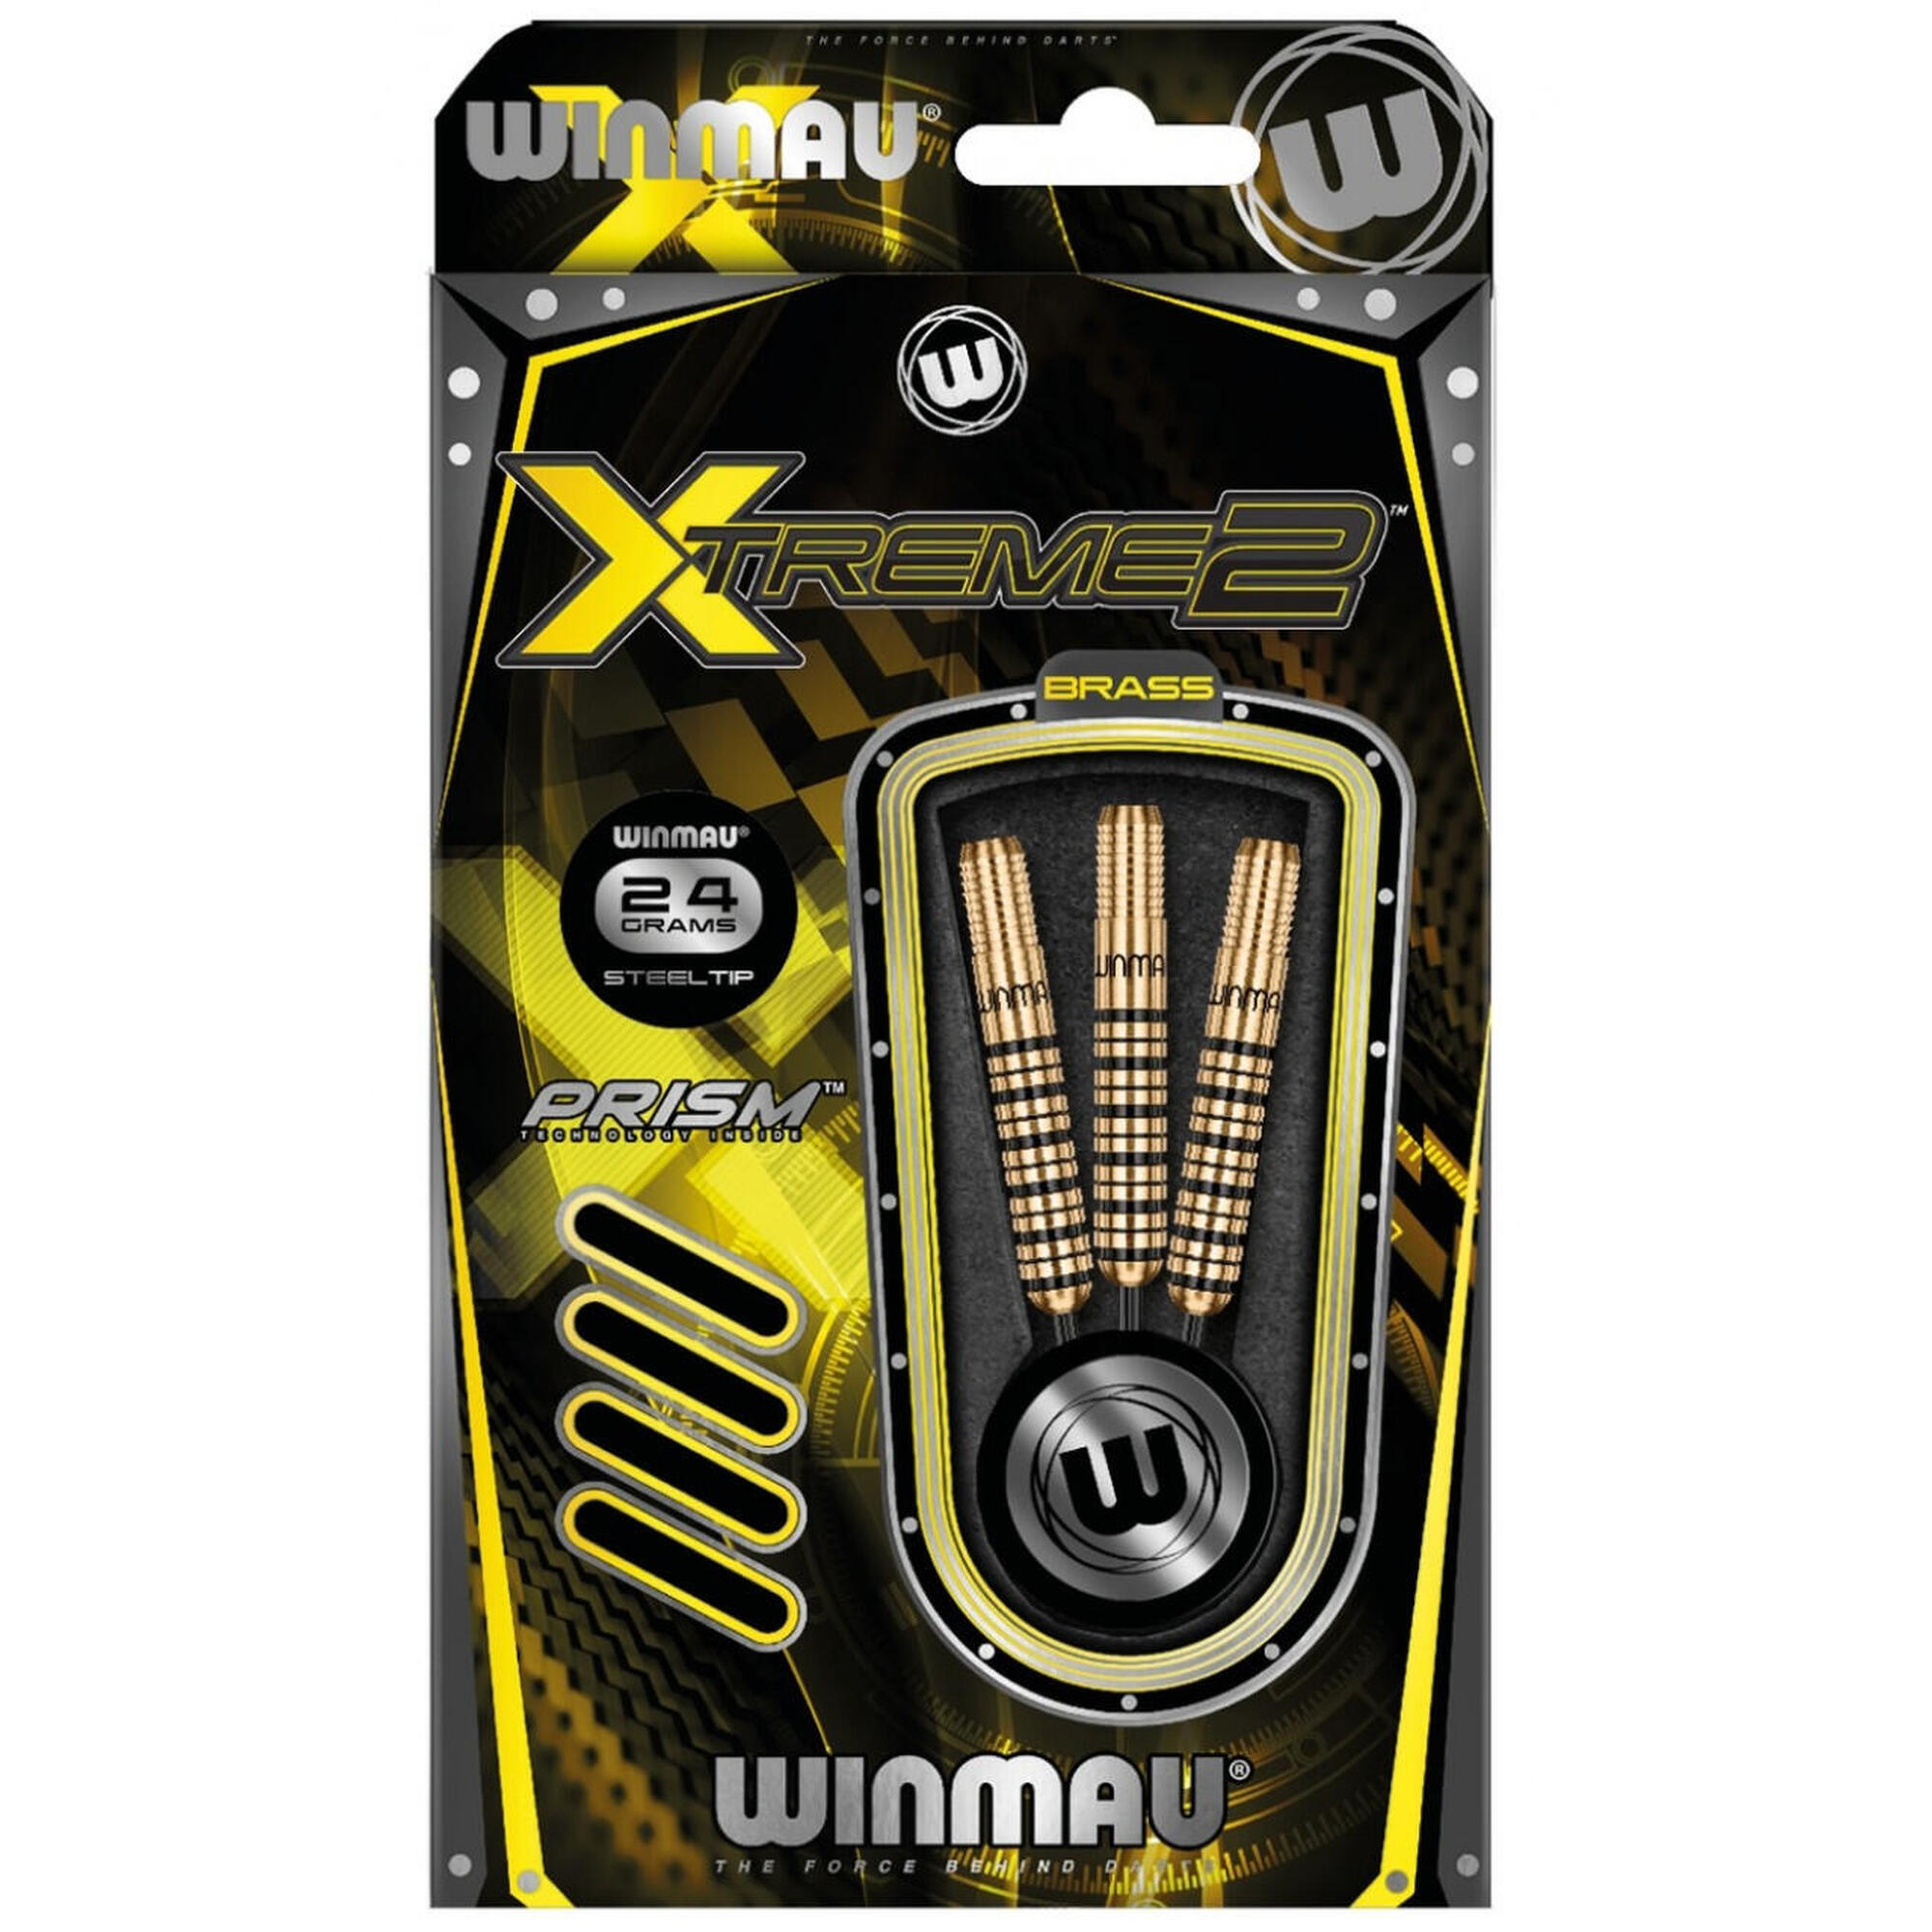 Winmau Darts szár hegye Xtreme2 brass